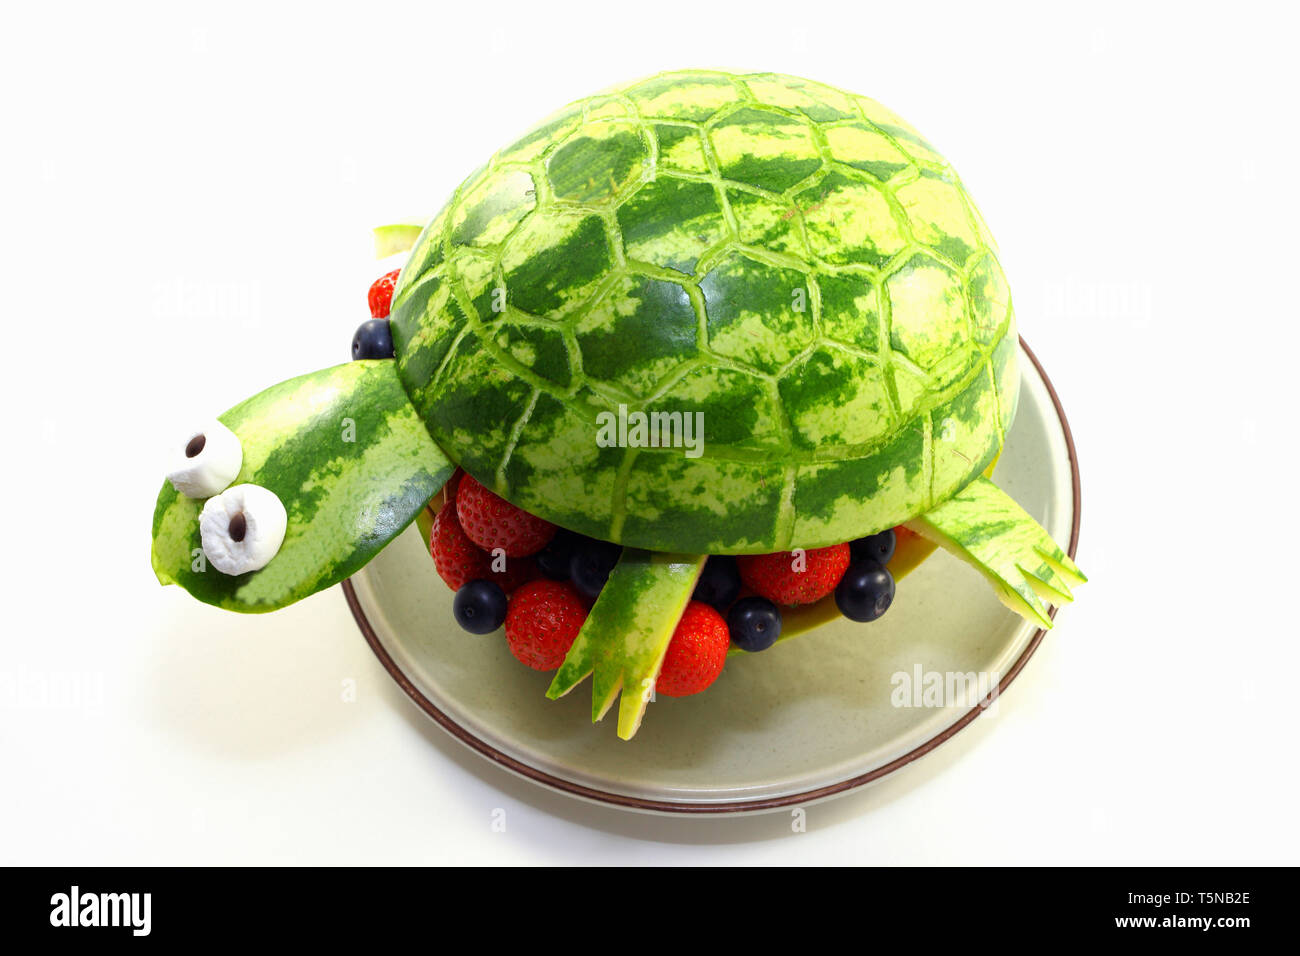 Wassermelone Schildkröte - Schildkröte aus einer Wassermelone geschnitzt Stockfoto